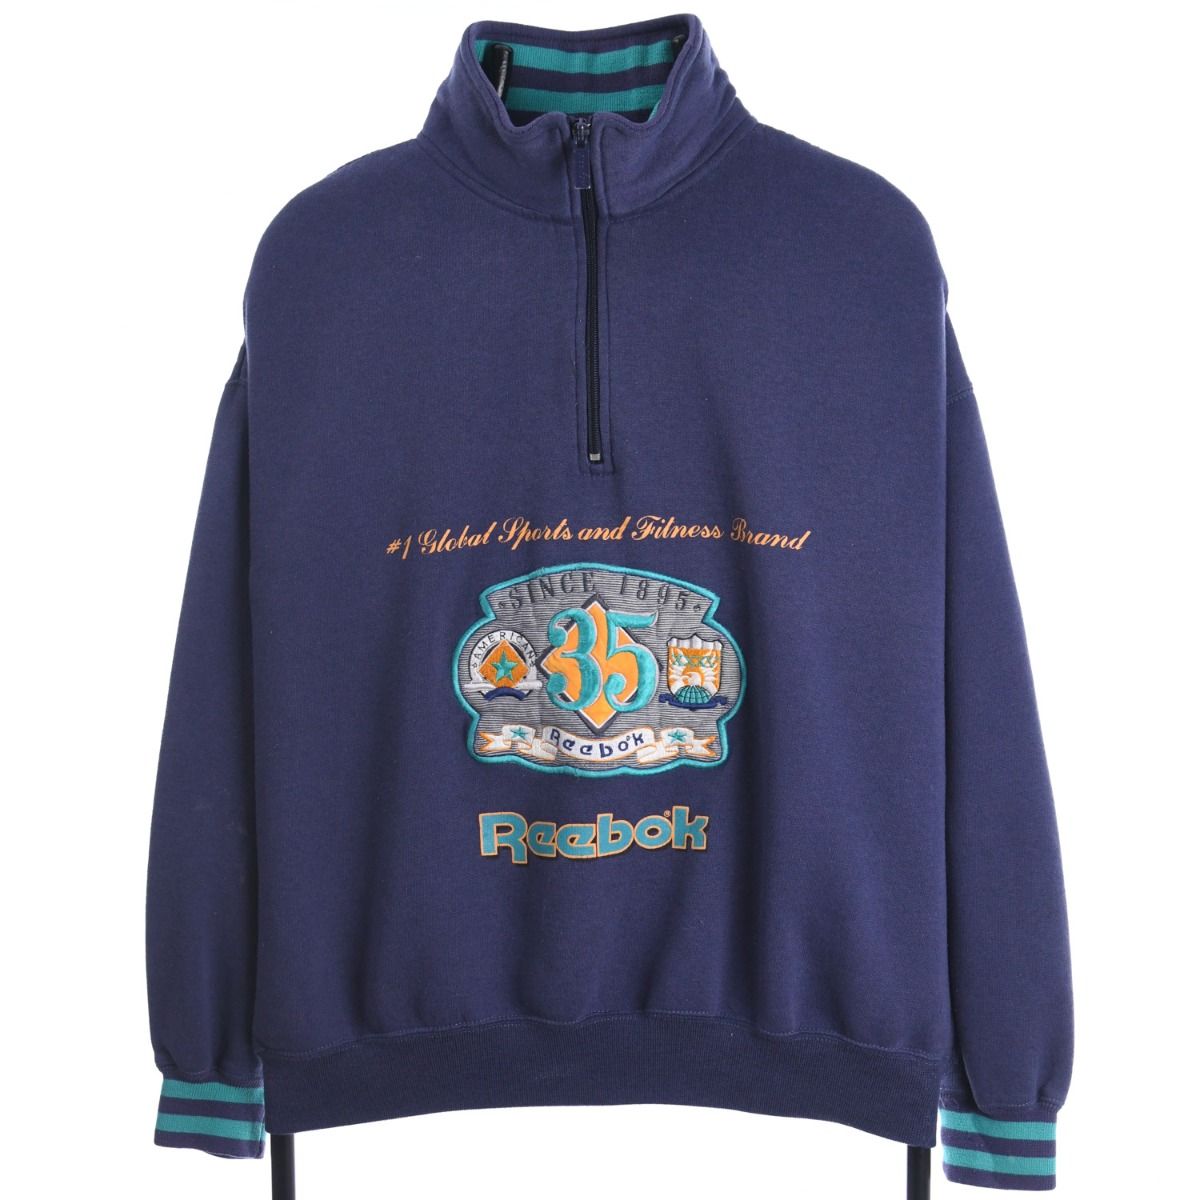 Reebok 1990s Quarter-Zip Sweatshirt